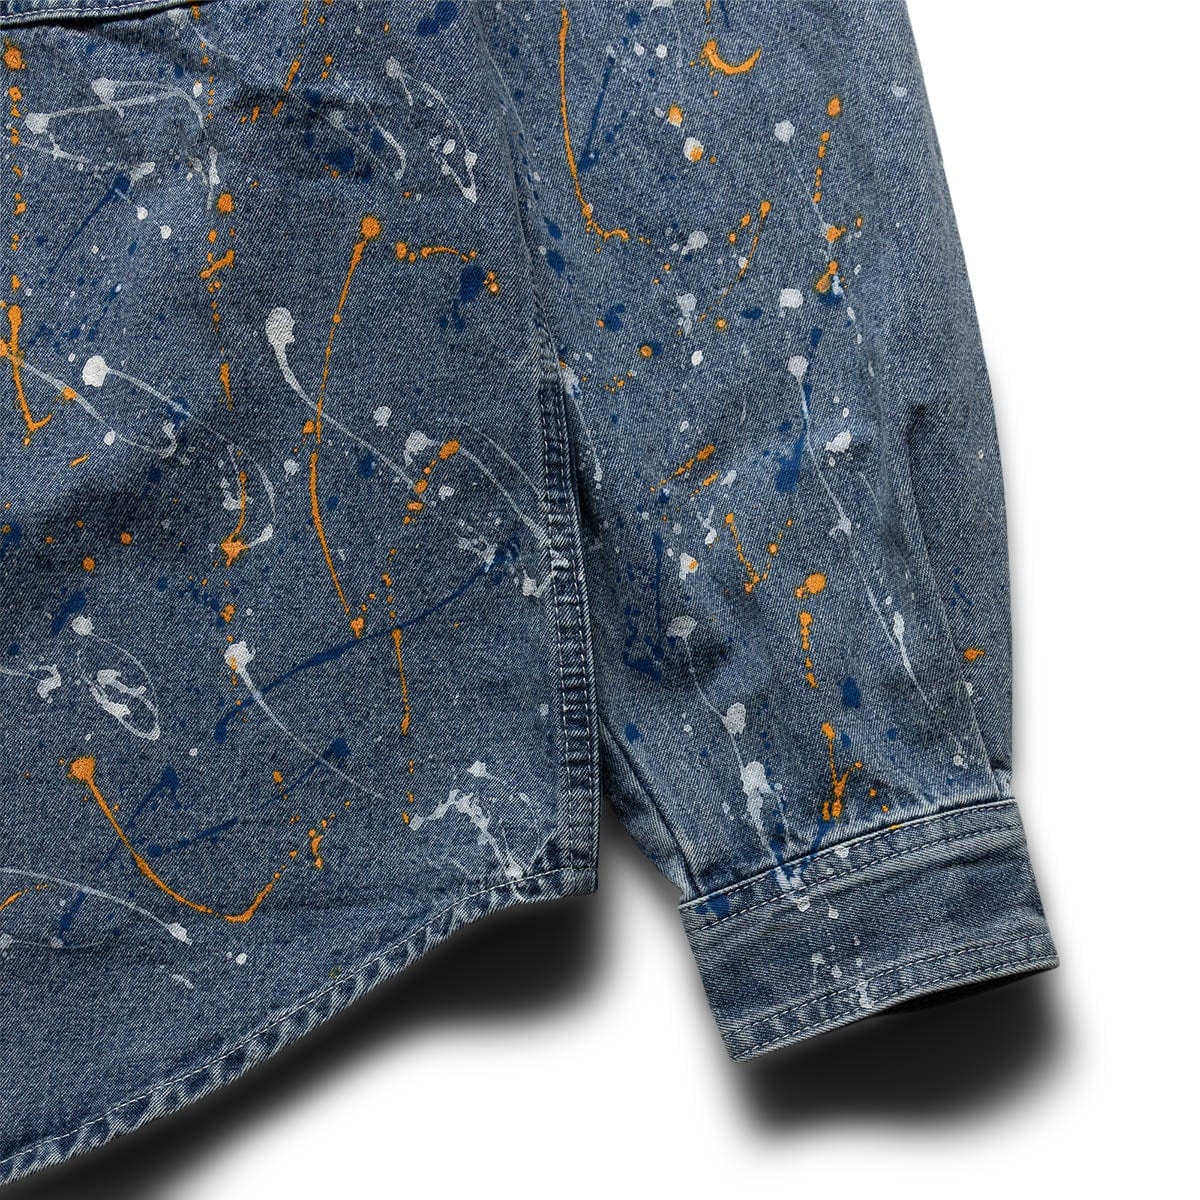 Constellation embroidered denim shirt in blue